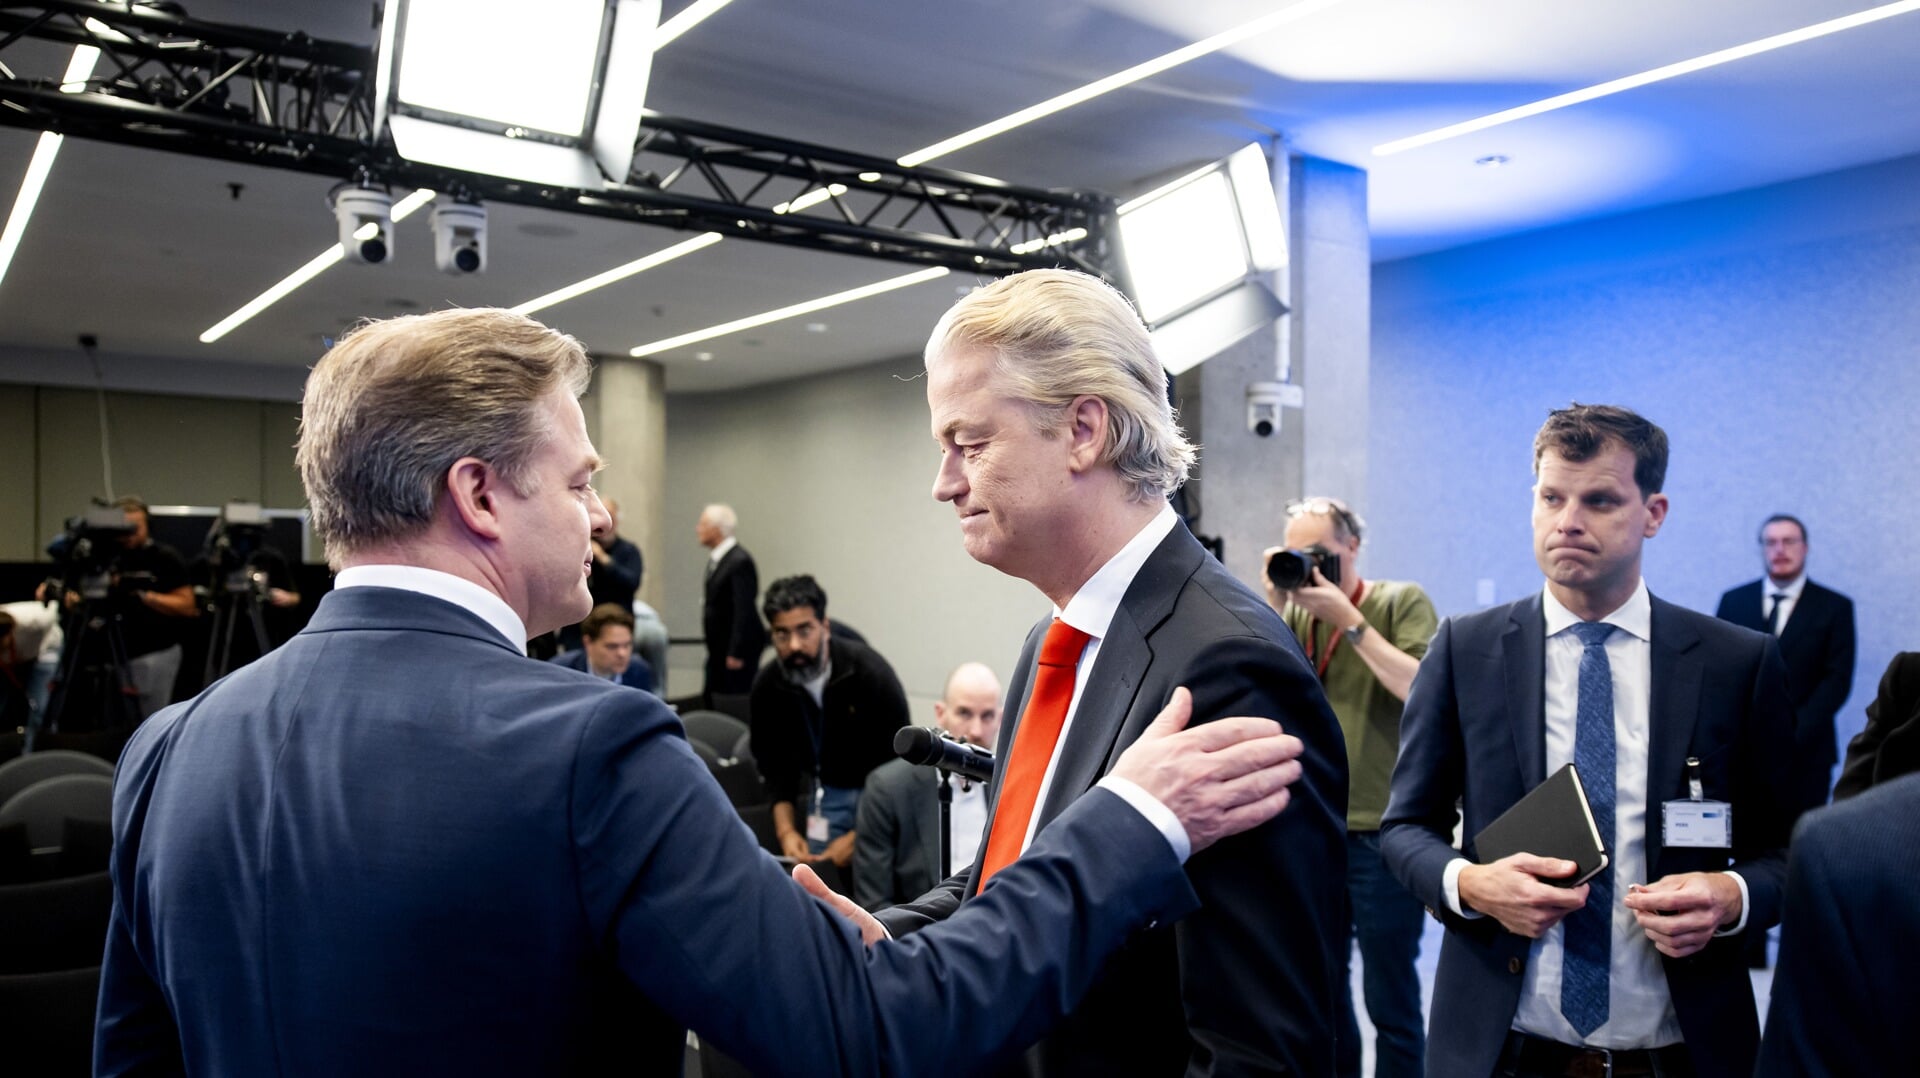 Pieter Omtzigt (NSC) en Geert Wilders (PVV) tijdens de presentatie van het hoofdlijnenakkoord. De vier partijen PVV, NSC, VVD en BBB hebben een akkoord bereikt voor een nieuw kabinet. 